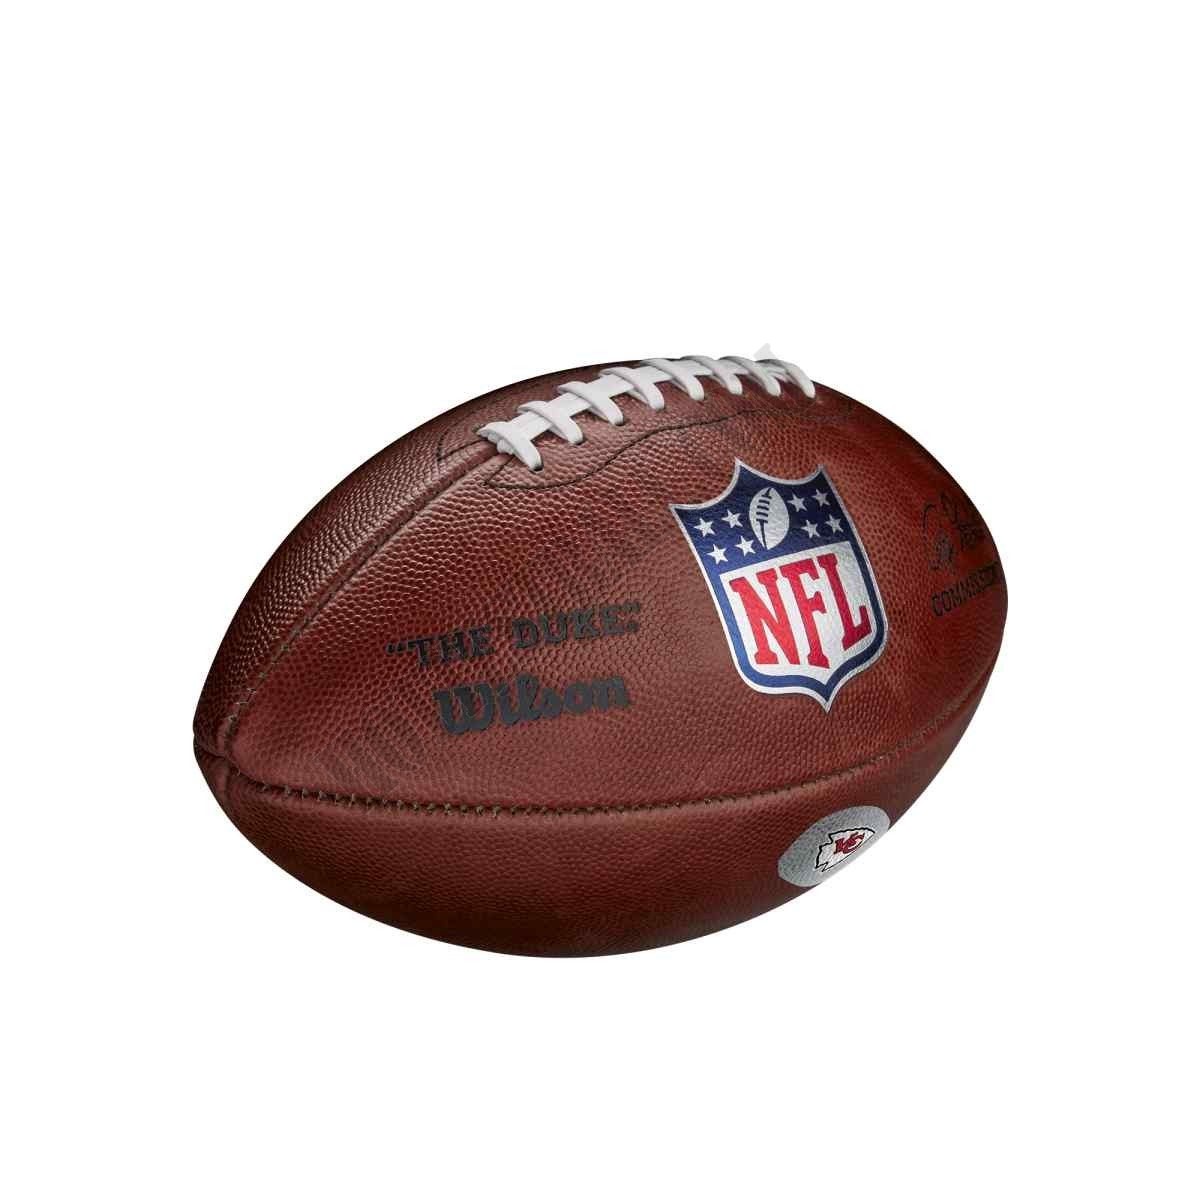 The Duke Decal NFL Football - Kansas City Chiefs - Wilson Discount Store - -2